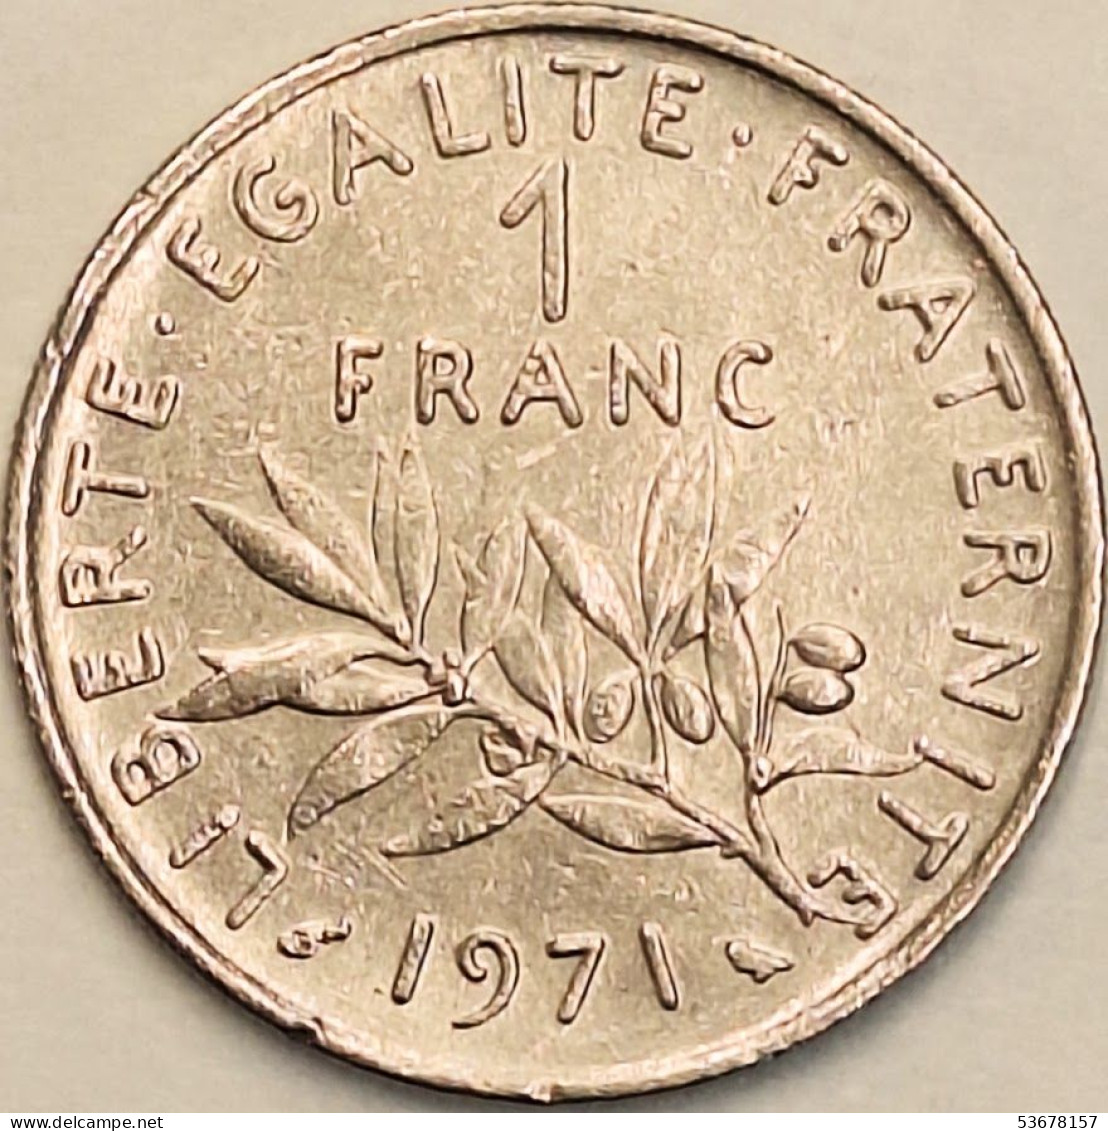 France - Franc 1971, KM# 925.1 (#4315) - 1 Franc